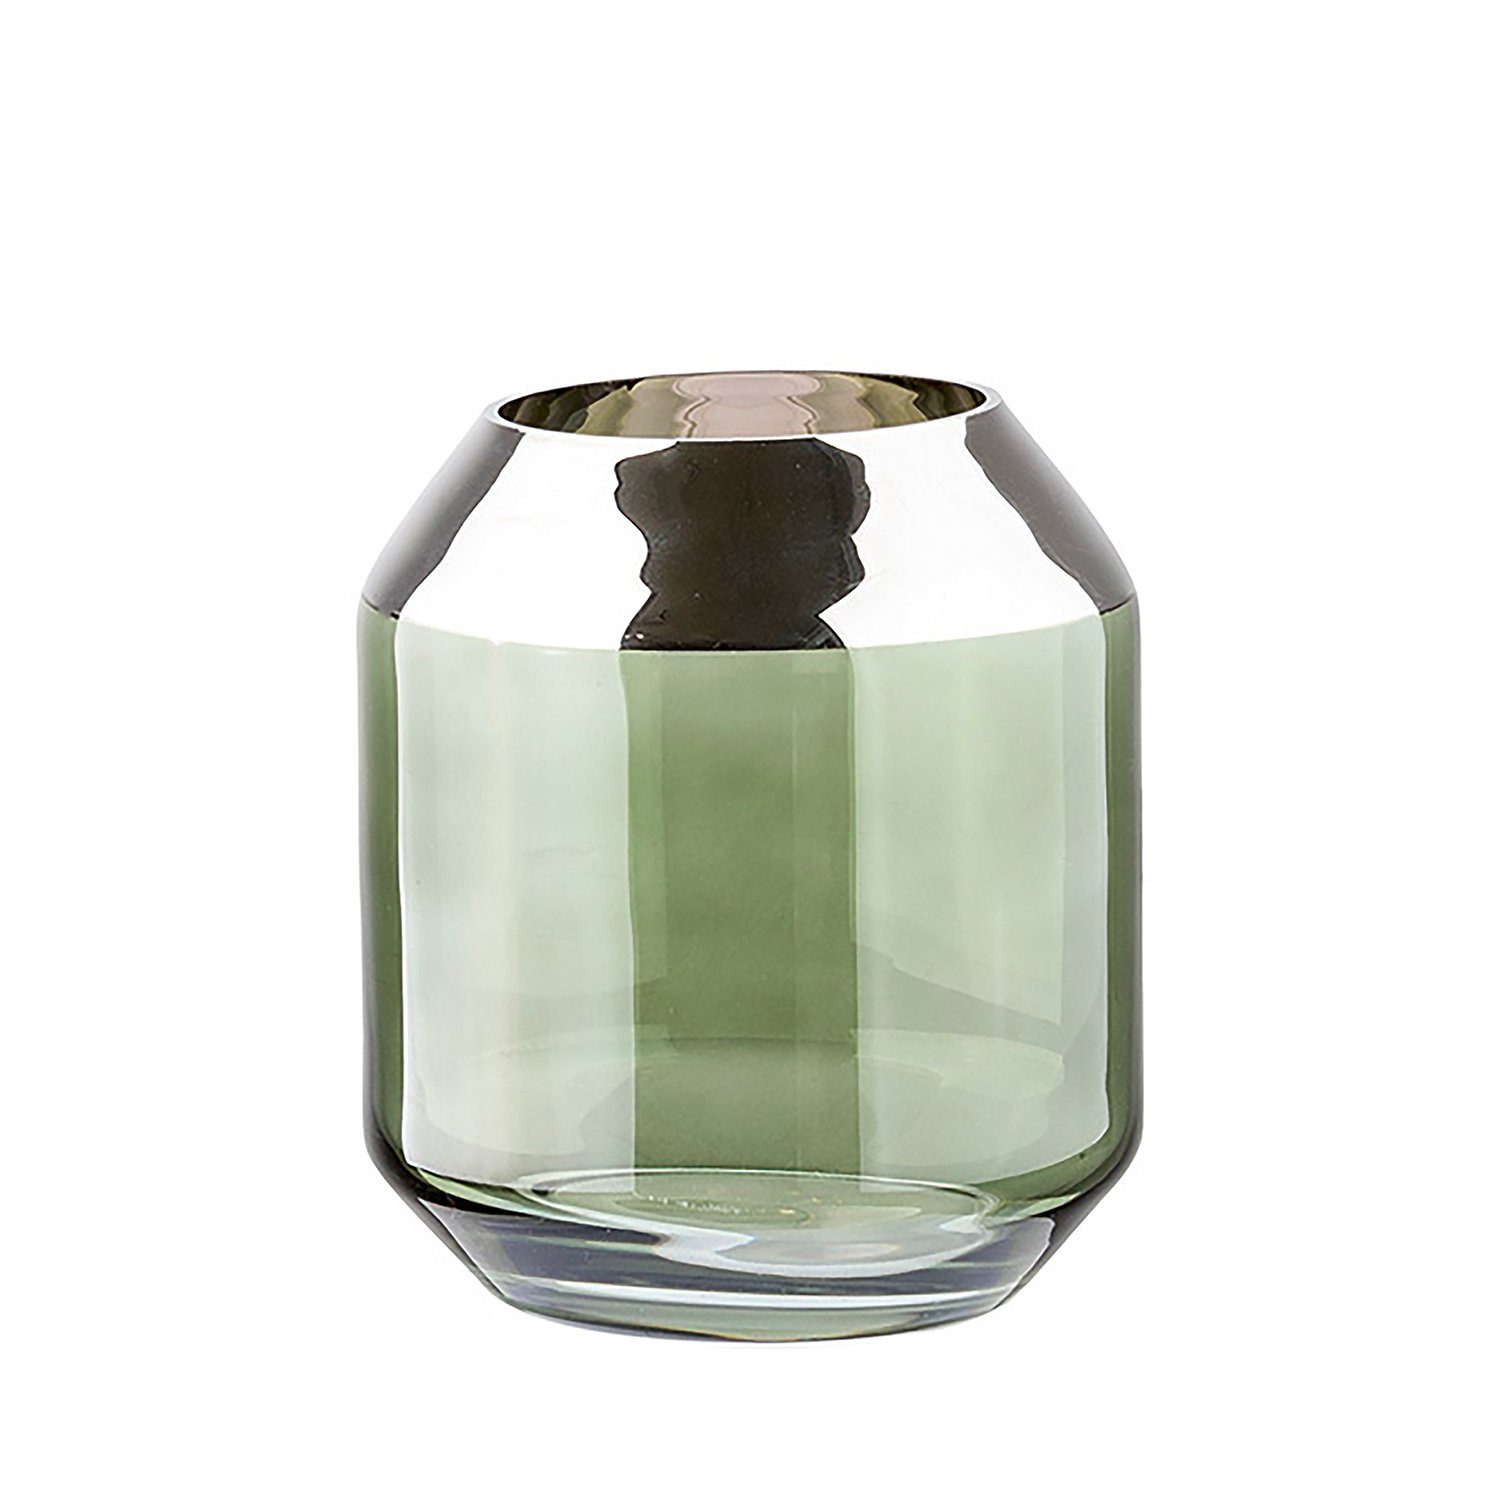 Fink Teelichthalter Teelichthalter / Vase SMILLA - dunkelgrün - Glas - H.14cm x B.12cm (1 St), mundgeblasen - folierter silberfarbener Rand - Ø Öffnung: 9,5 cm